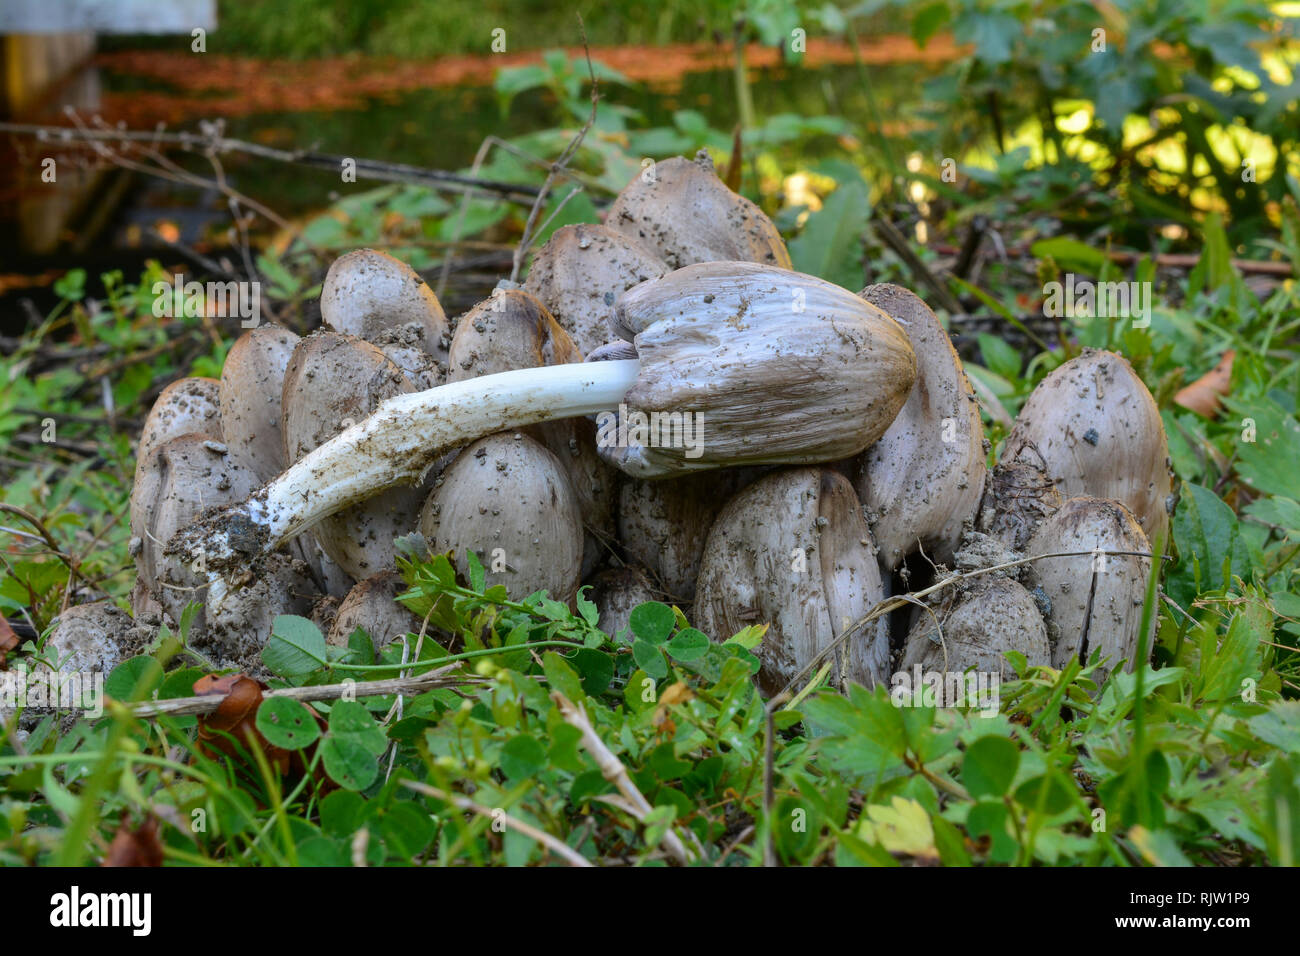 Cluster of Coprinus atramentarius or Common Inkcap, or Tippler's bane mushrooms  in natural habitat, delicious edible mushroom Stock Photo